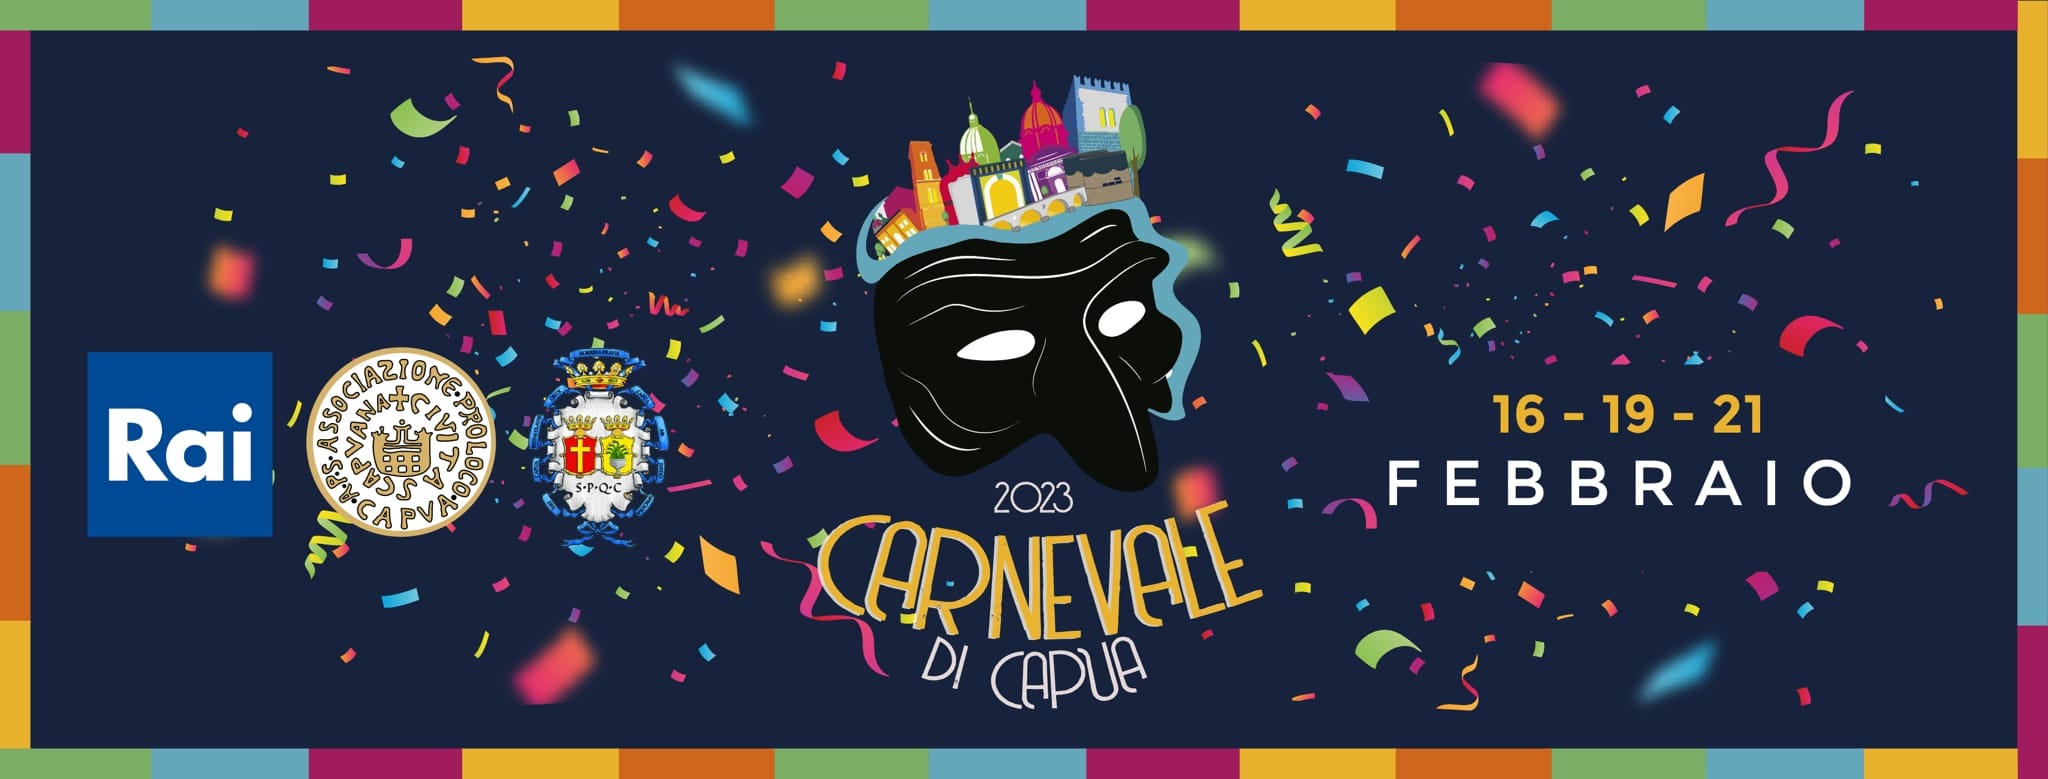 Carnevale di Capua 2023.jpg